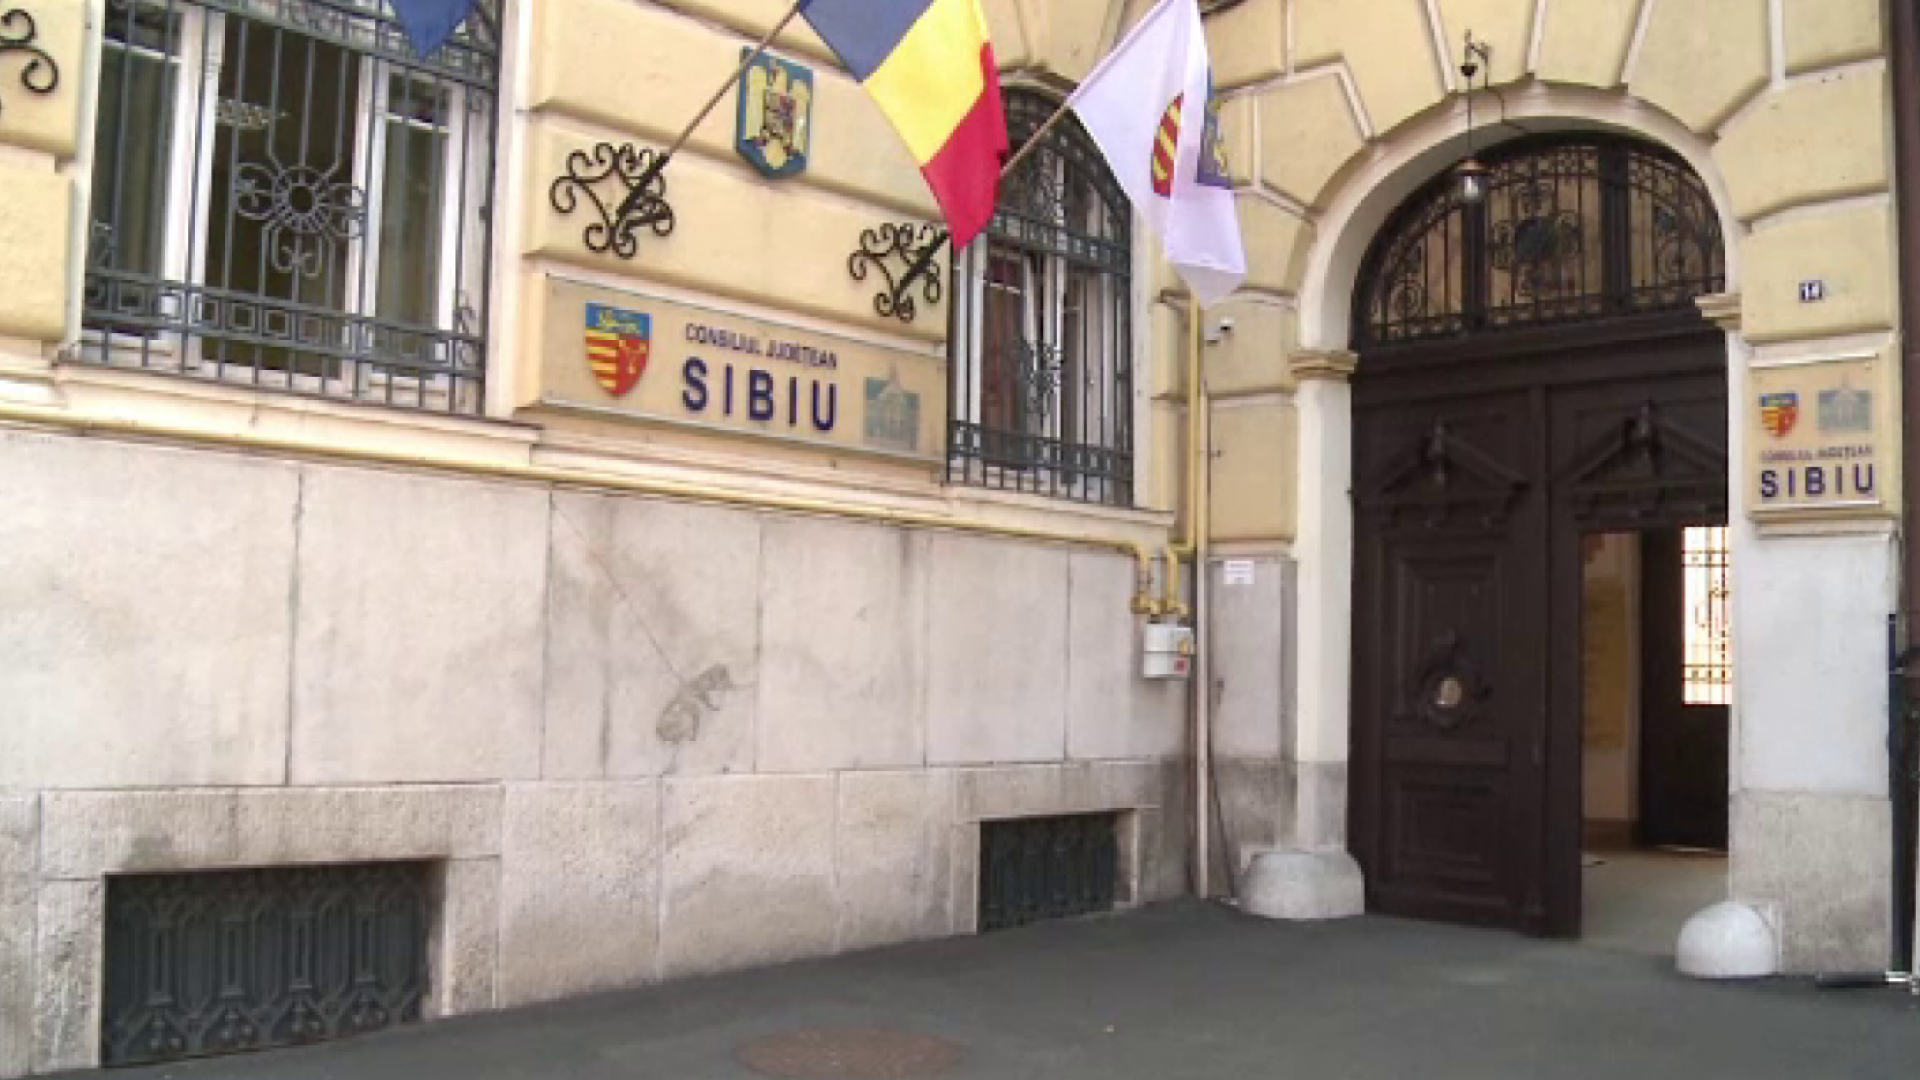 Angajații din CJ Sibiu nu mai au voie să stea dimineața la cafea și țigară în fața instituției